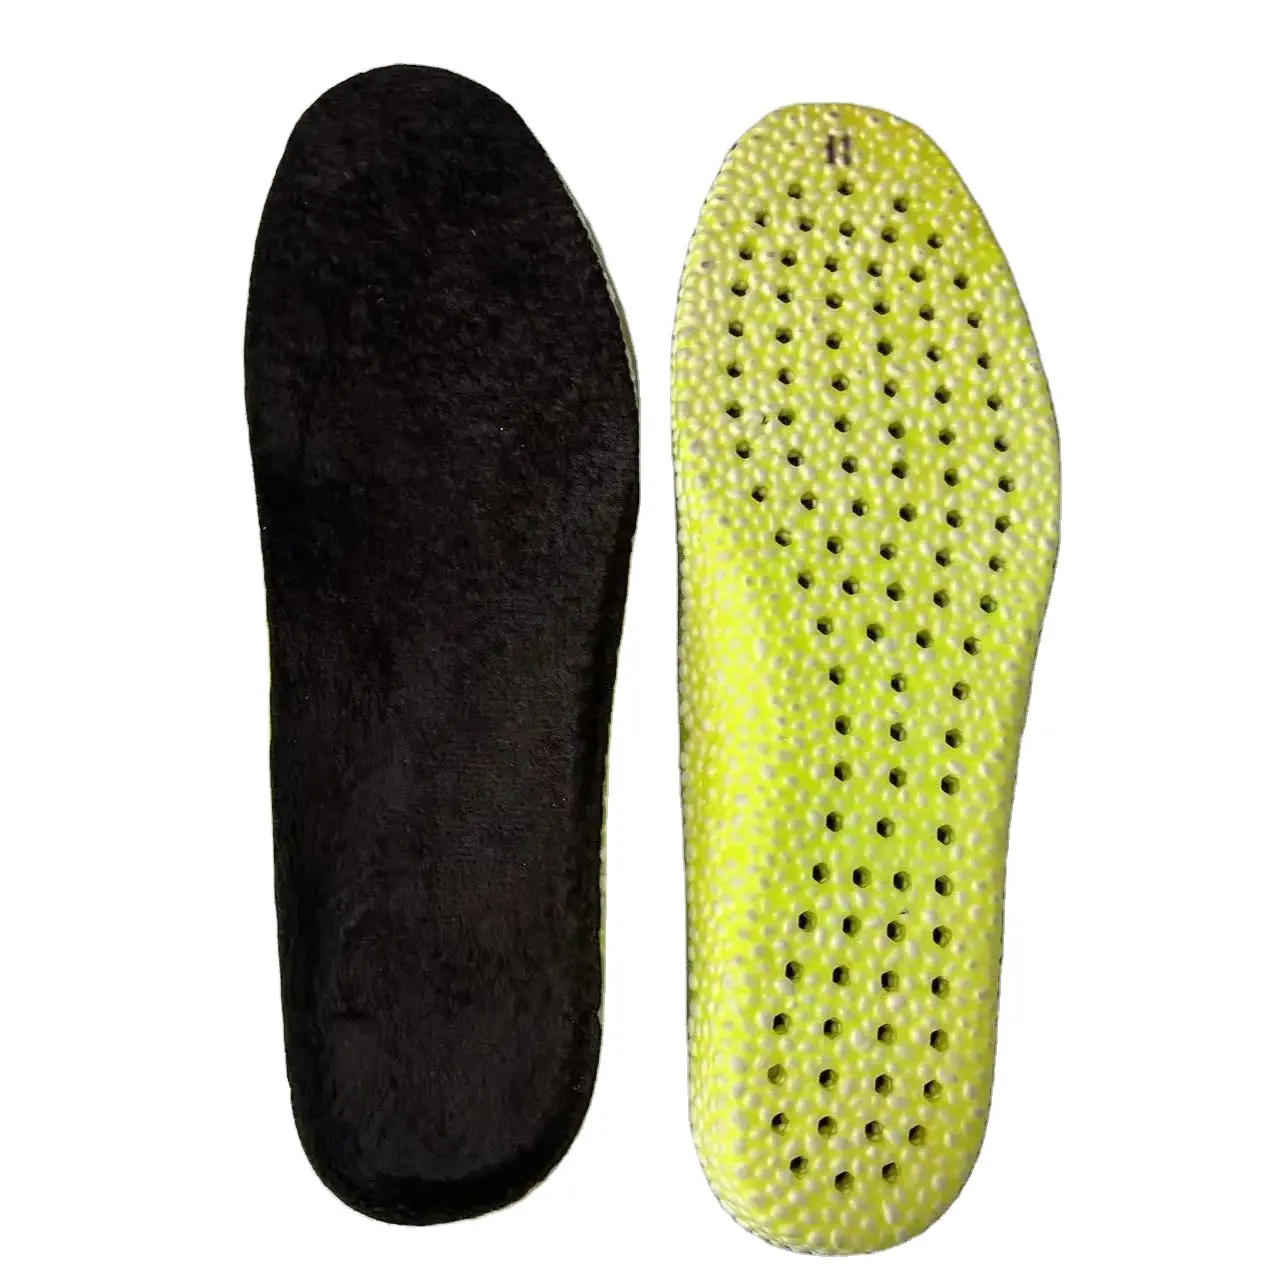 Venta al por mayor de plantillas de materiales EVA PU de alta transpirabilidad de forro polar cómodo de piel para plantillas de zapatos